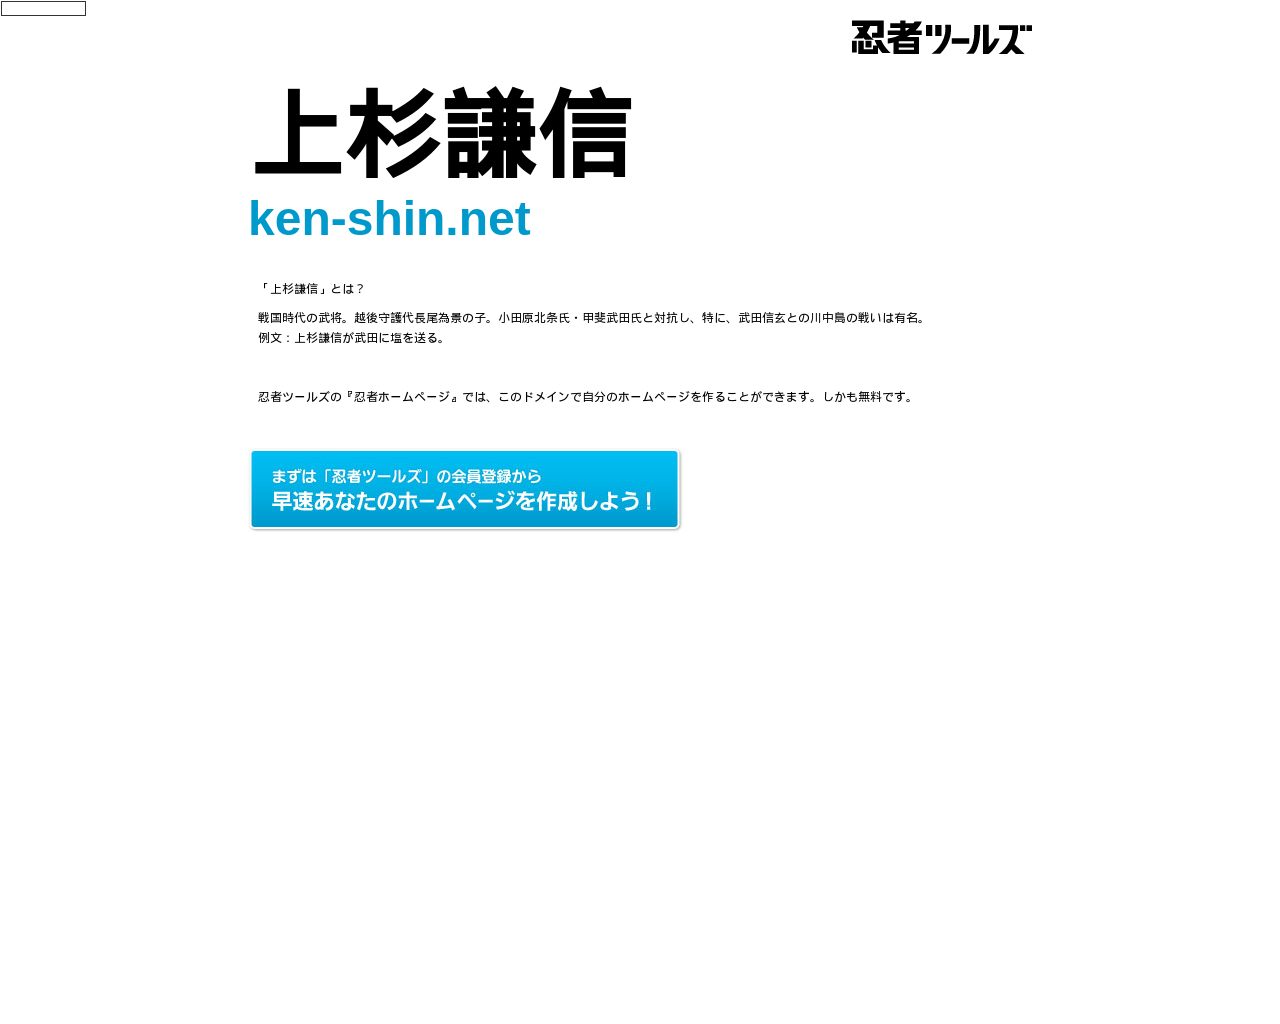 ken-shin.net